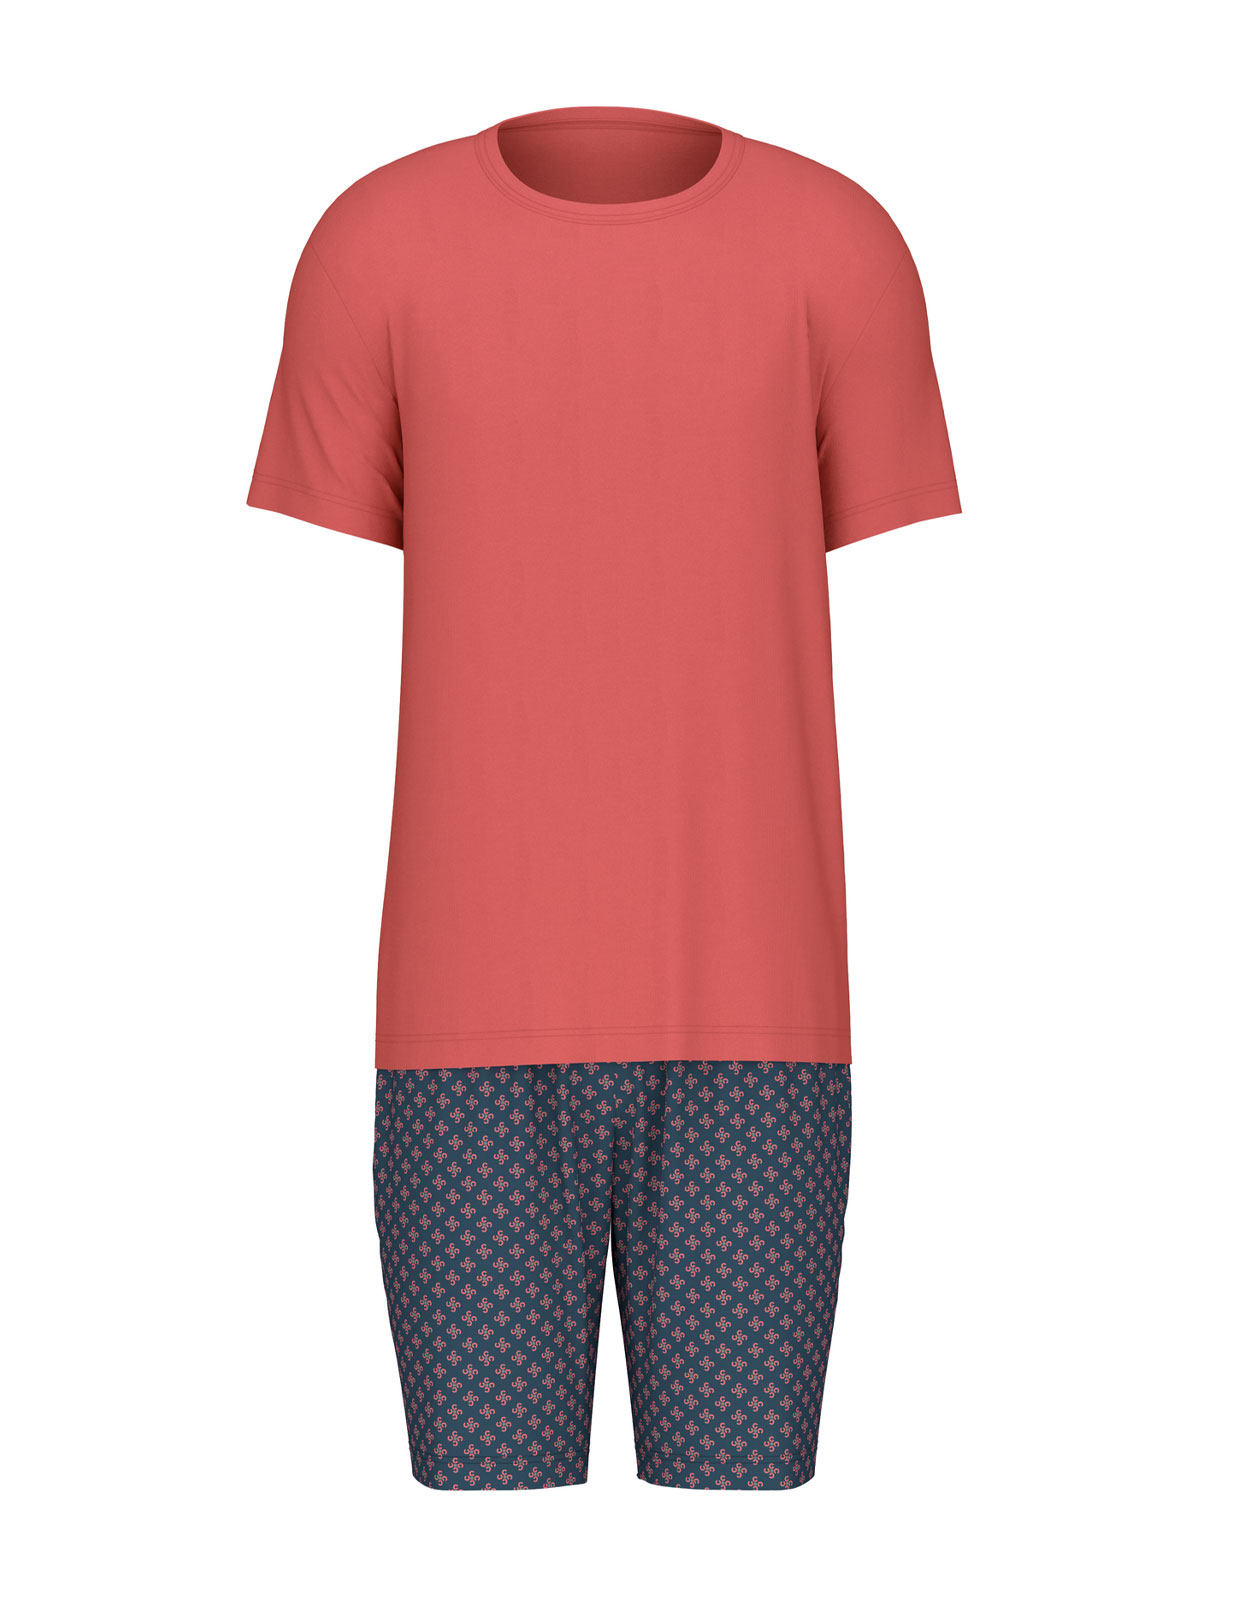 Pyjamas Röd/Blå Stl S